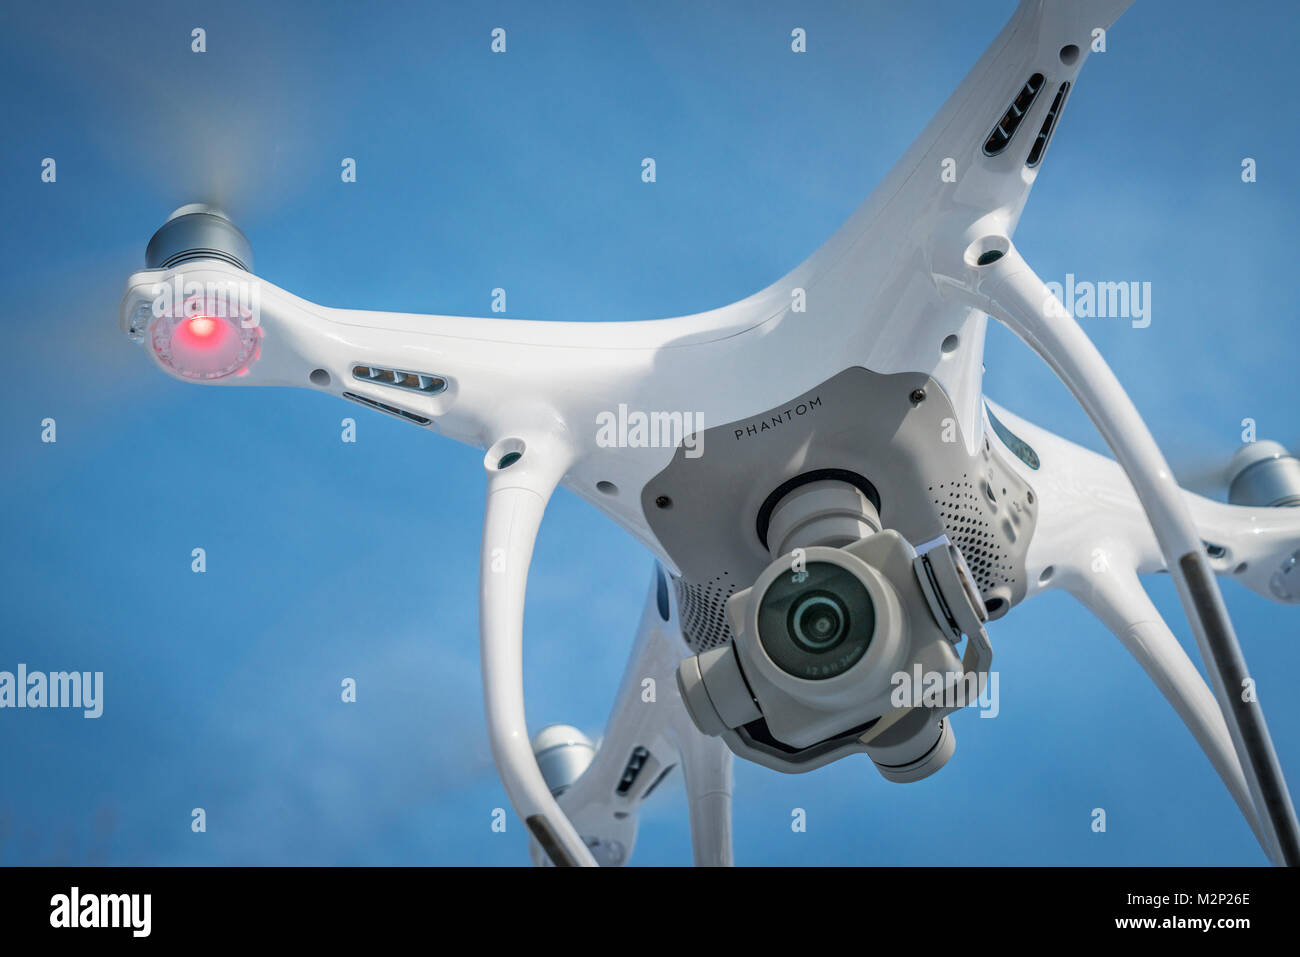 FORT COLLINS, CO, USA - Le 22 décembre 2016 : DJI Phantom 4 drone  quadcopter pro voler avec un appareil photo contre le ciel bleu Photo Stock  - Alamy